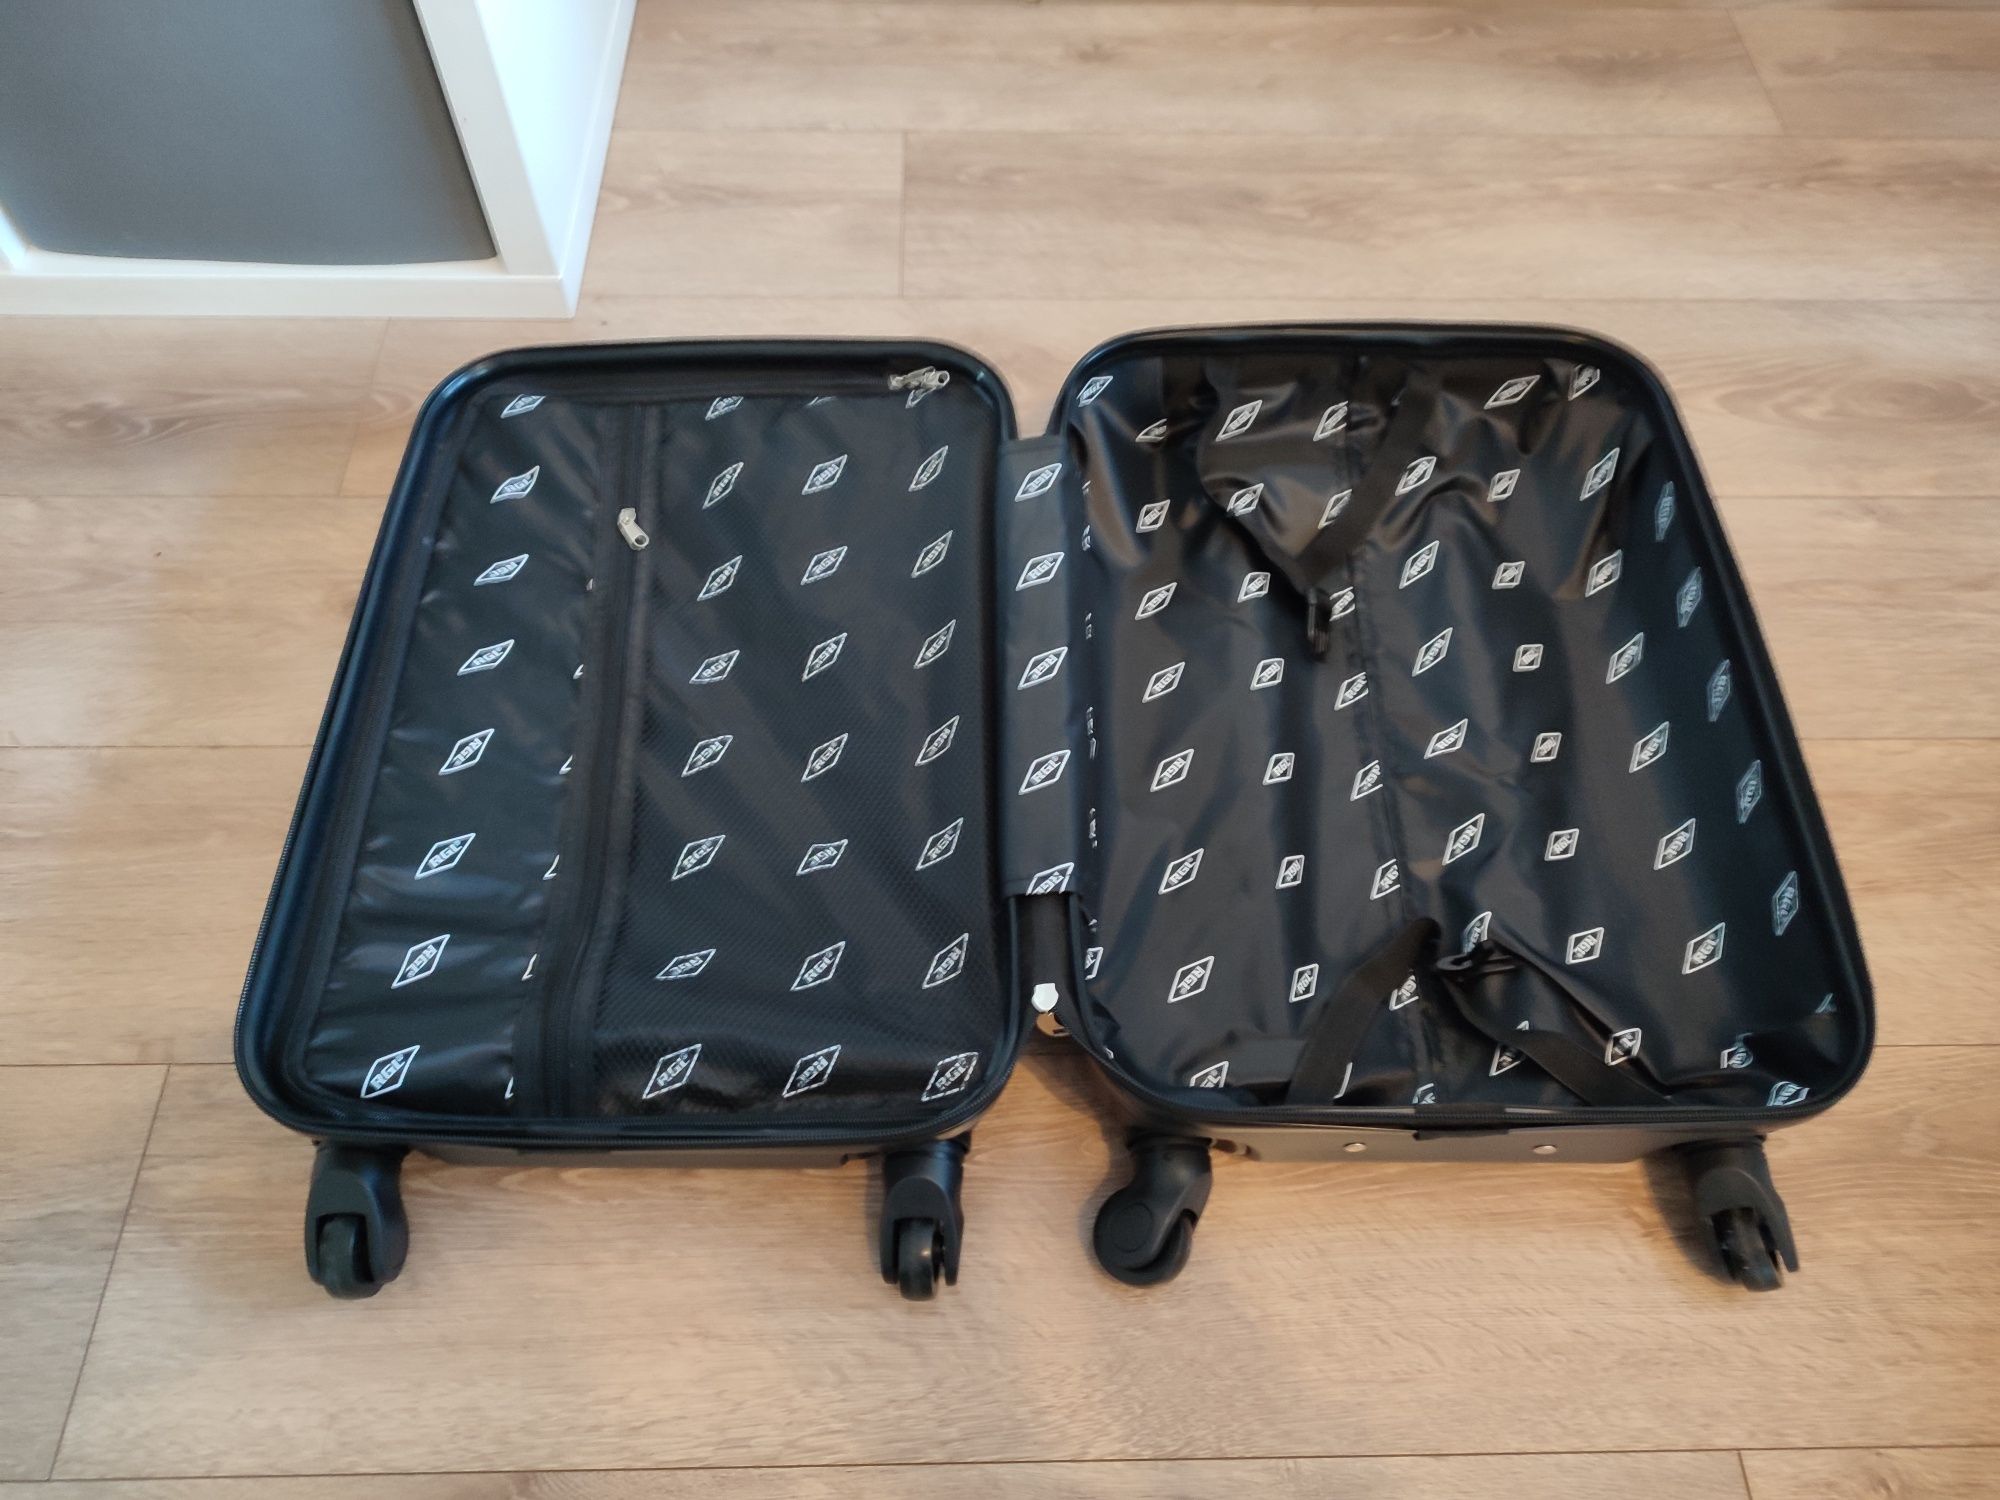 Nowa czarna walizka podróżna